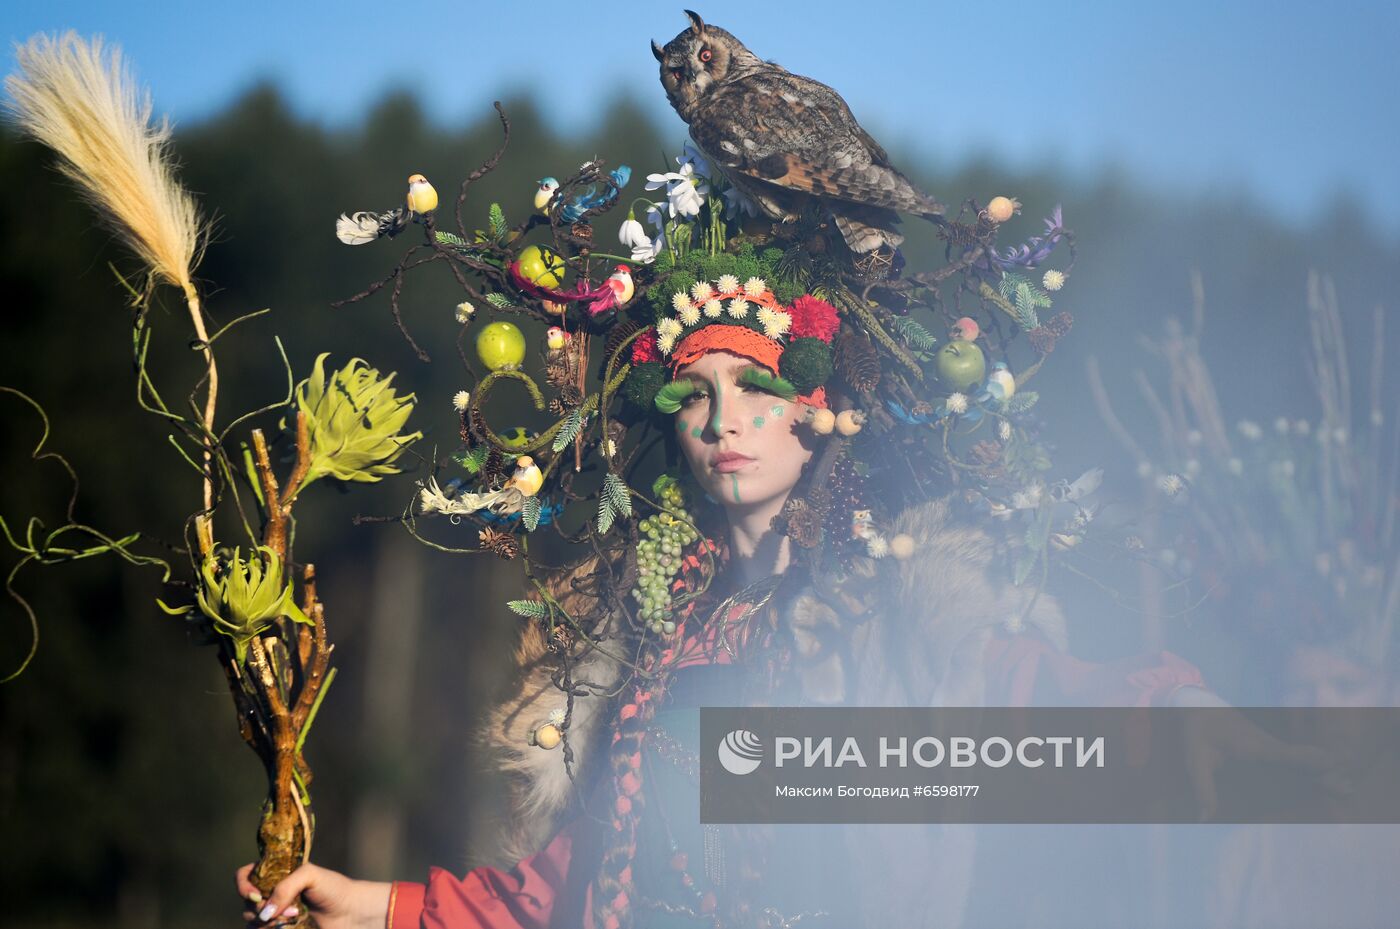 Этнический праздник "Питрау" в Татарстане